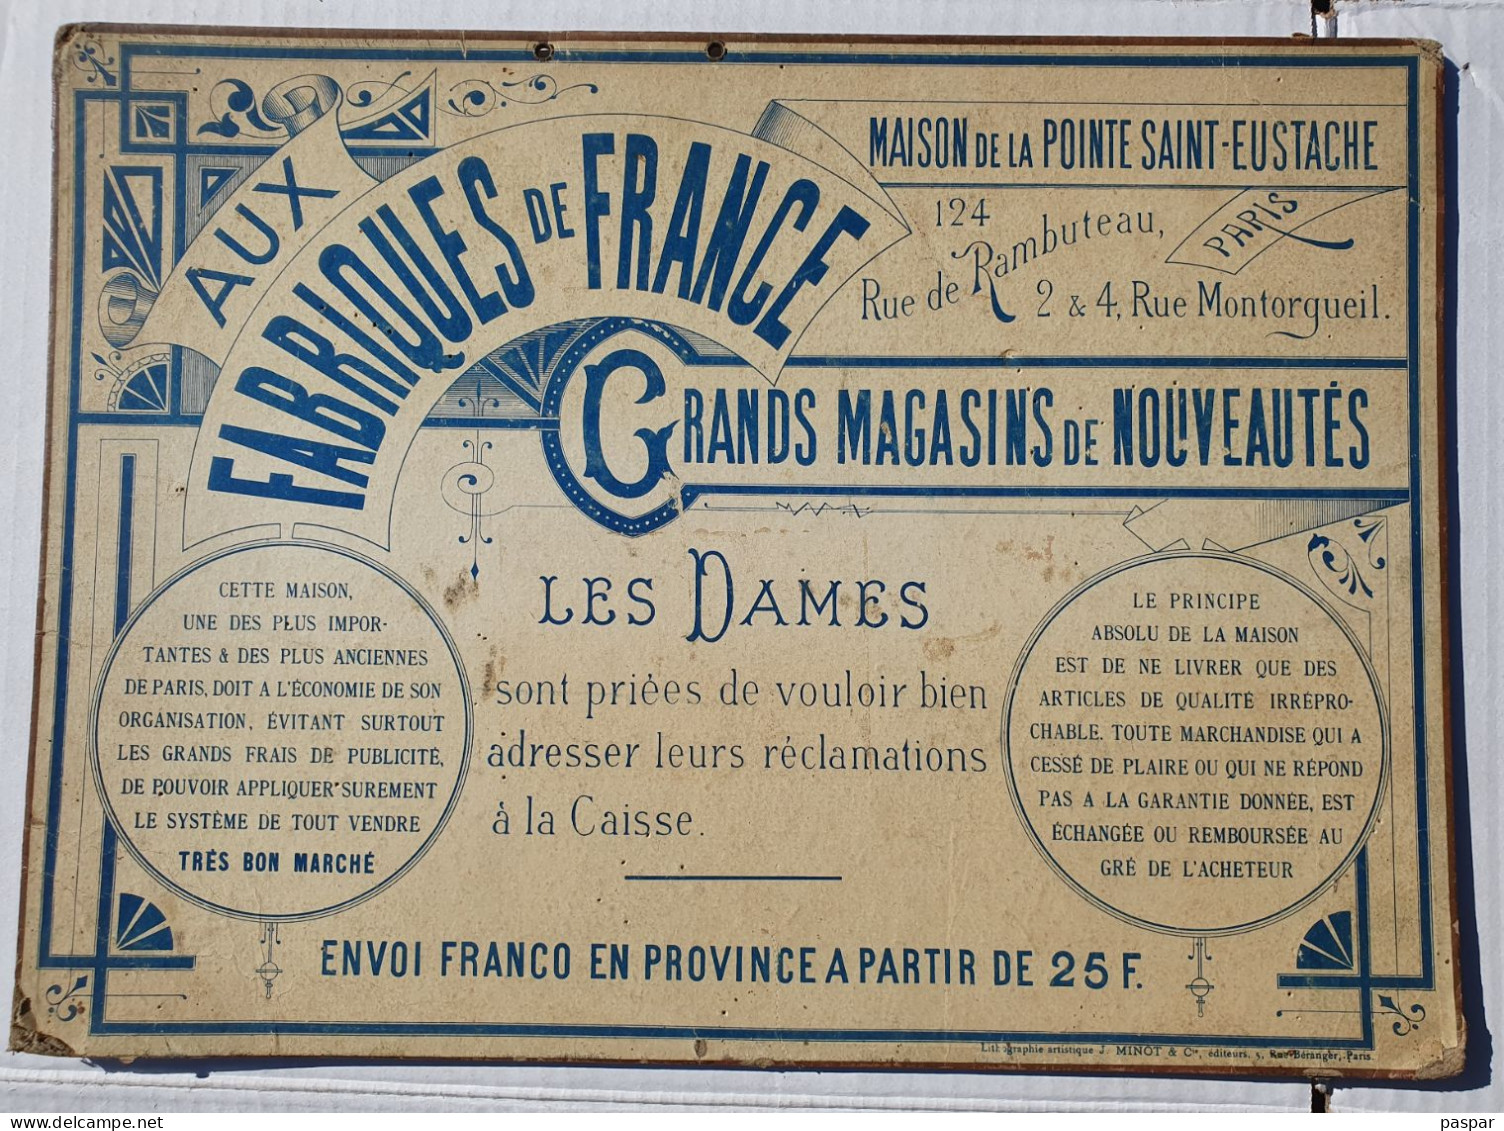 Affiche publicitaire calendrier 1893 - 38,5x28cm - Aux Fabriques de France - carton très épais - Lithographie J. Minot